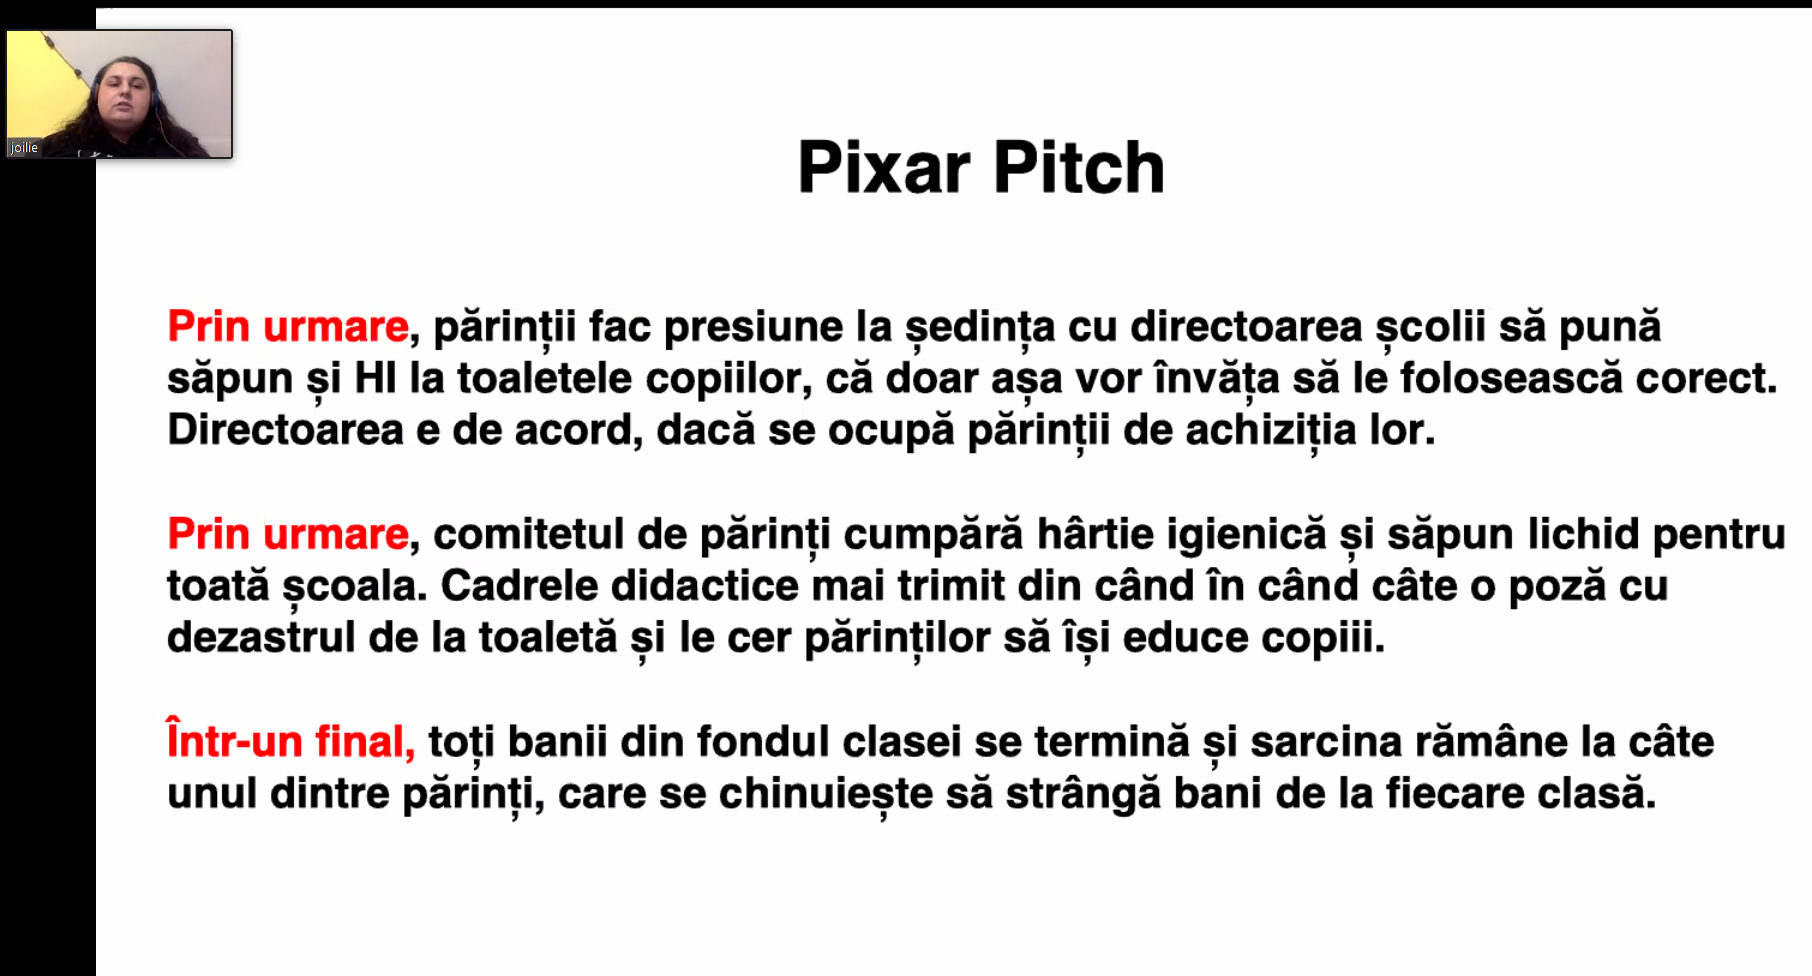 pixar-pitch2.png